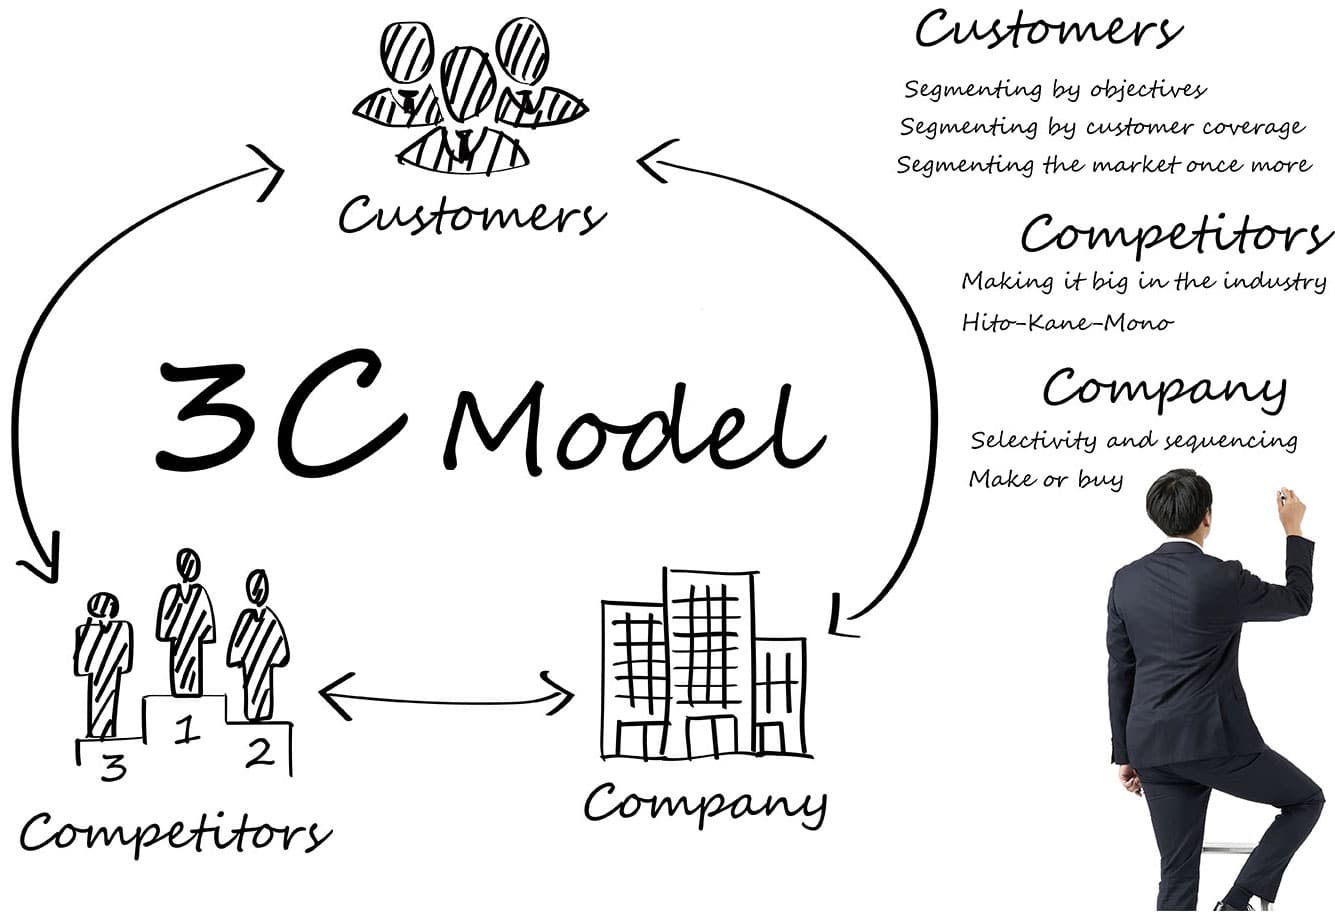 Mô hình 3C trong marketing và top 3 bài học thành công cho doanh nghiệp